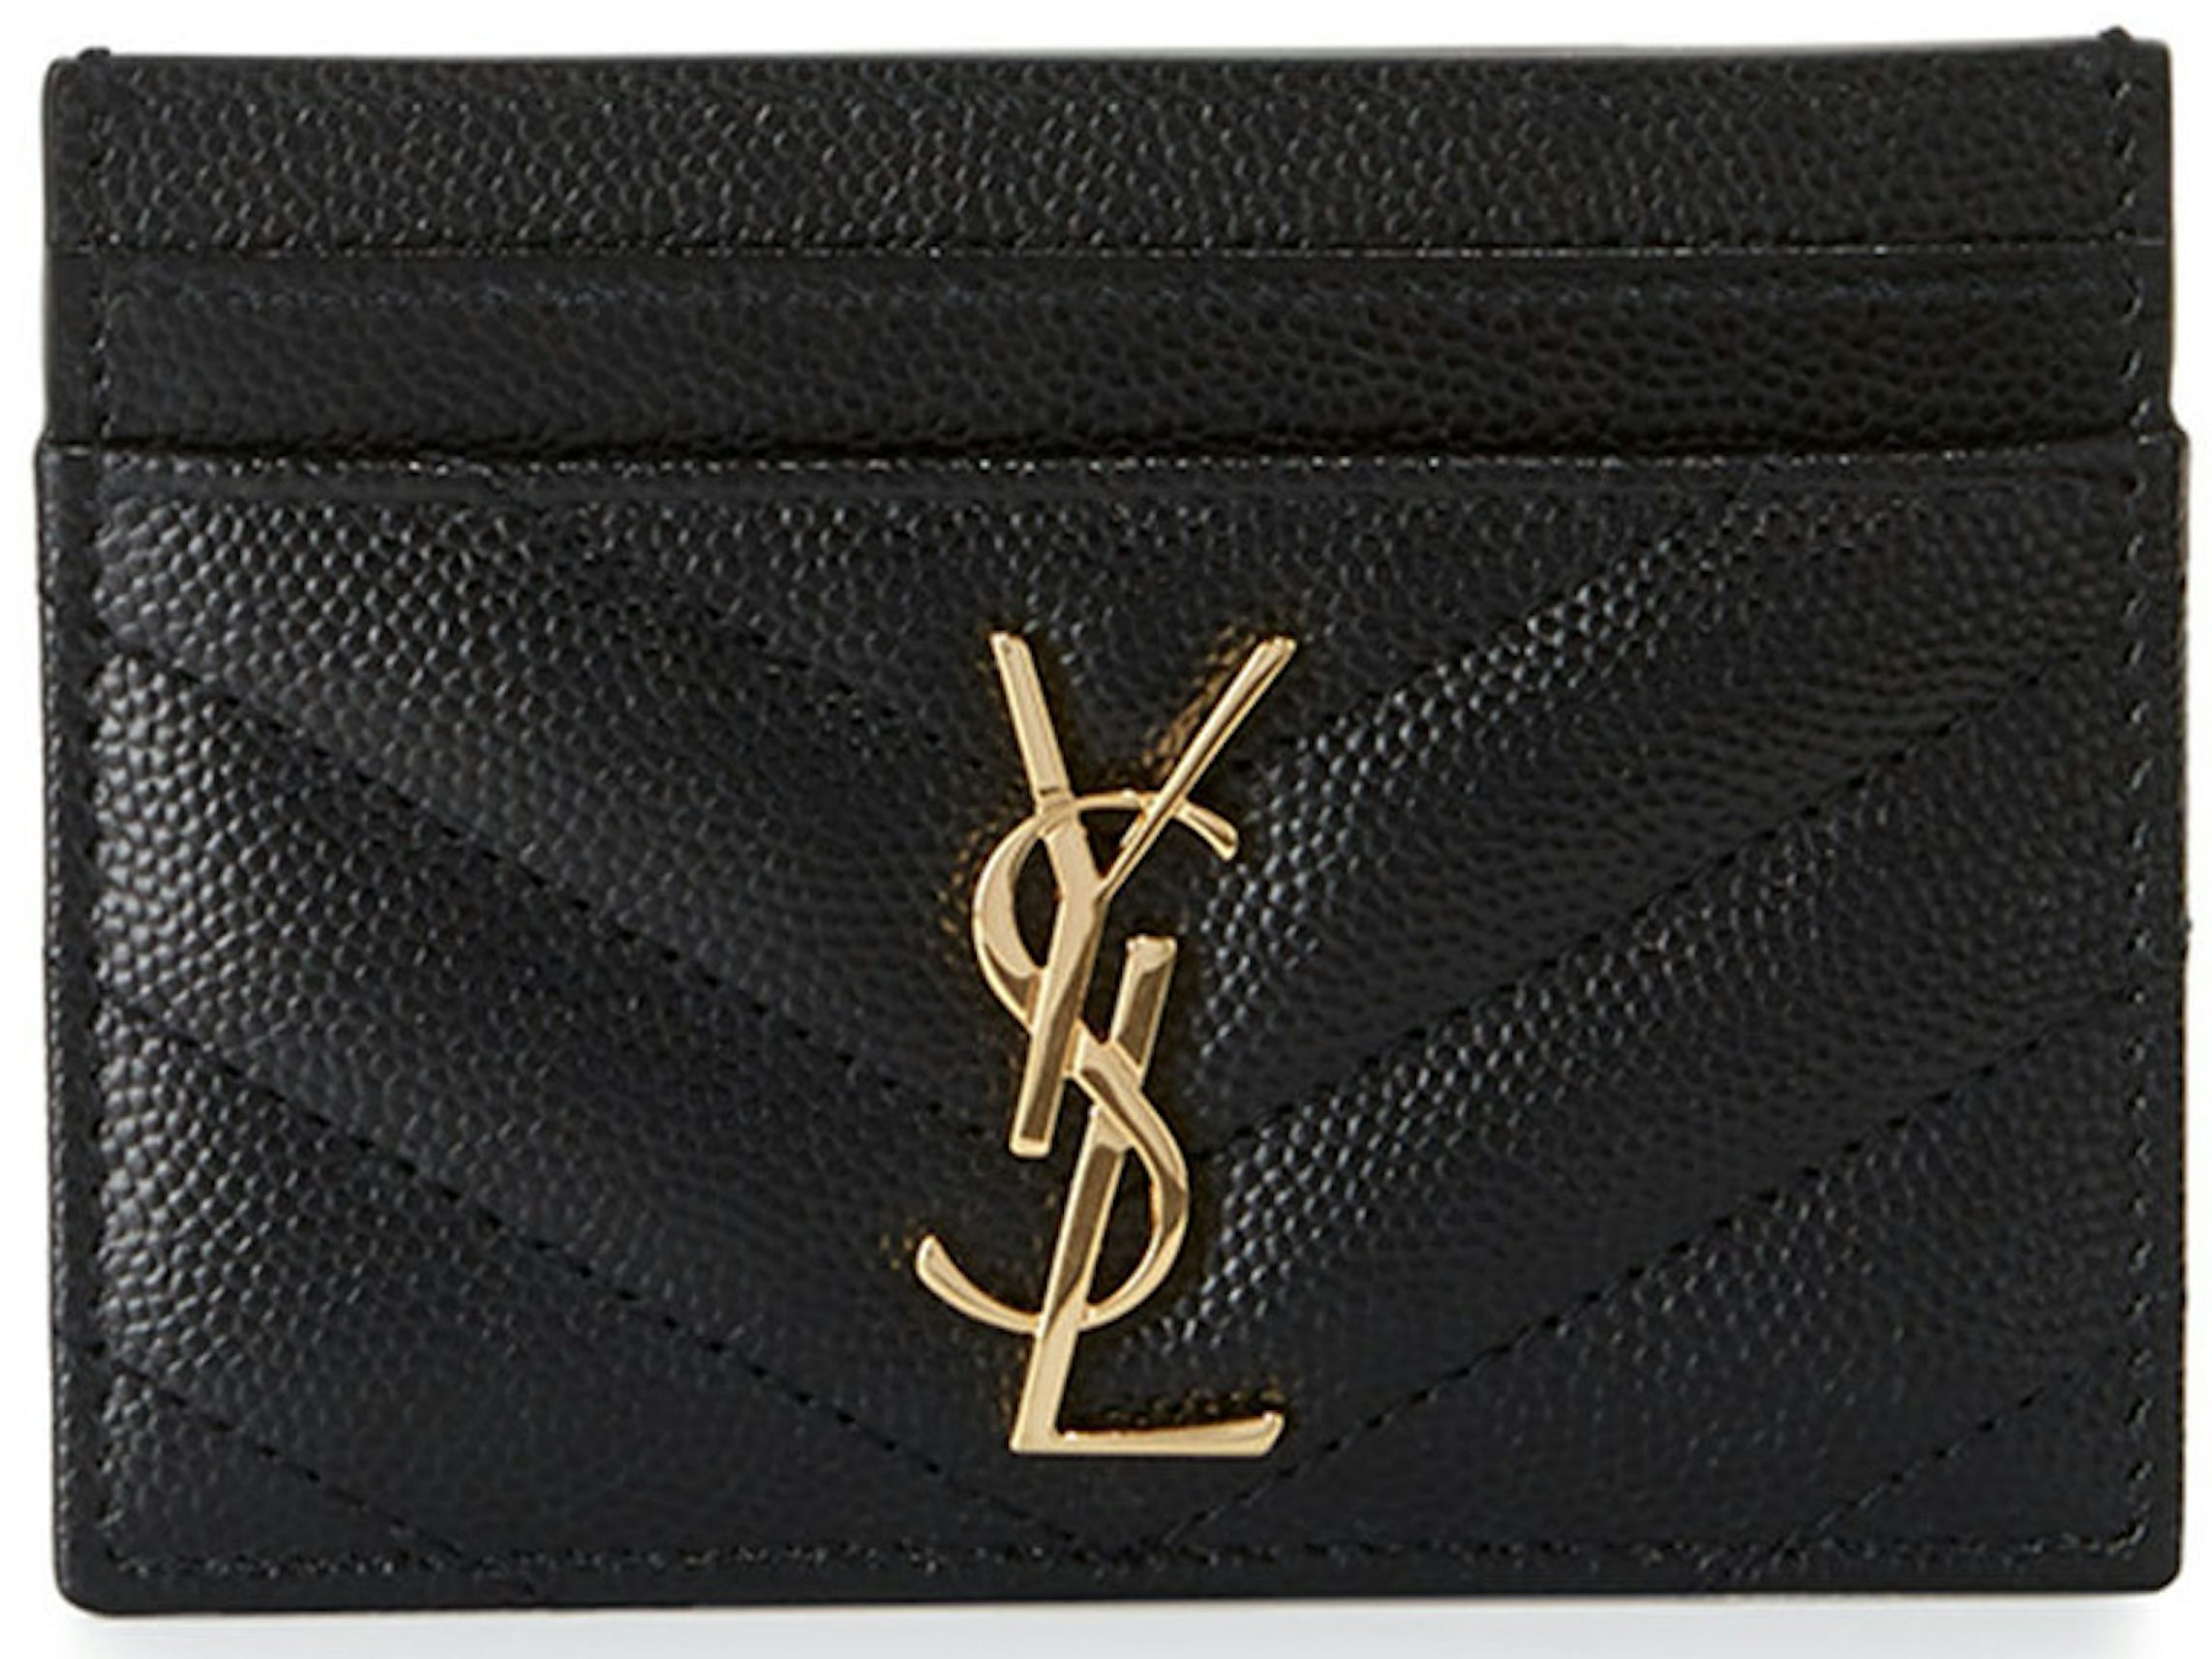 CASSANDRE MATELASSÉ chain wallet in grain de poudre embossed leather, Saint Laurent